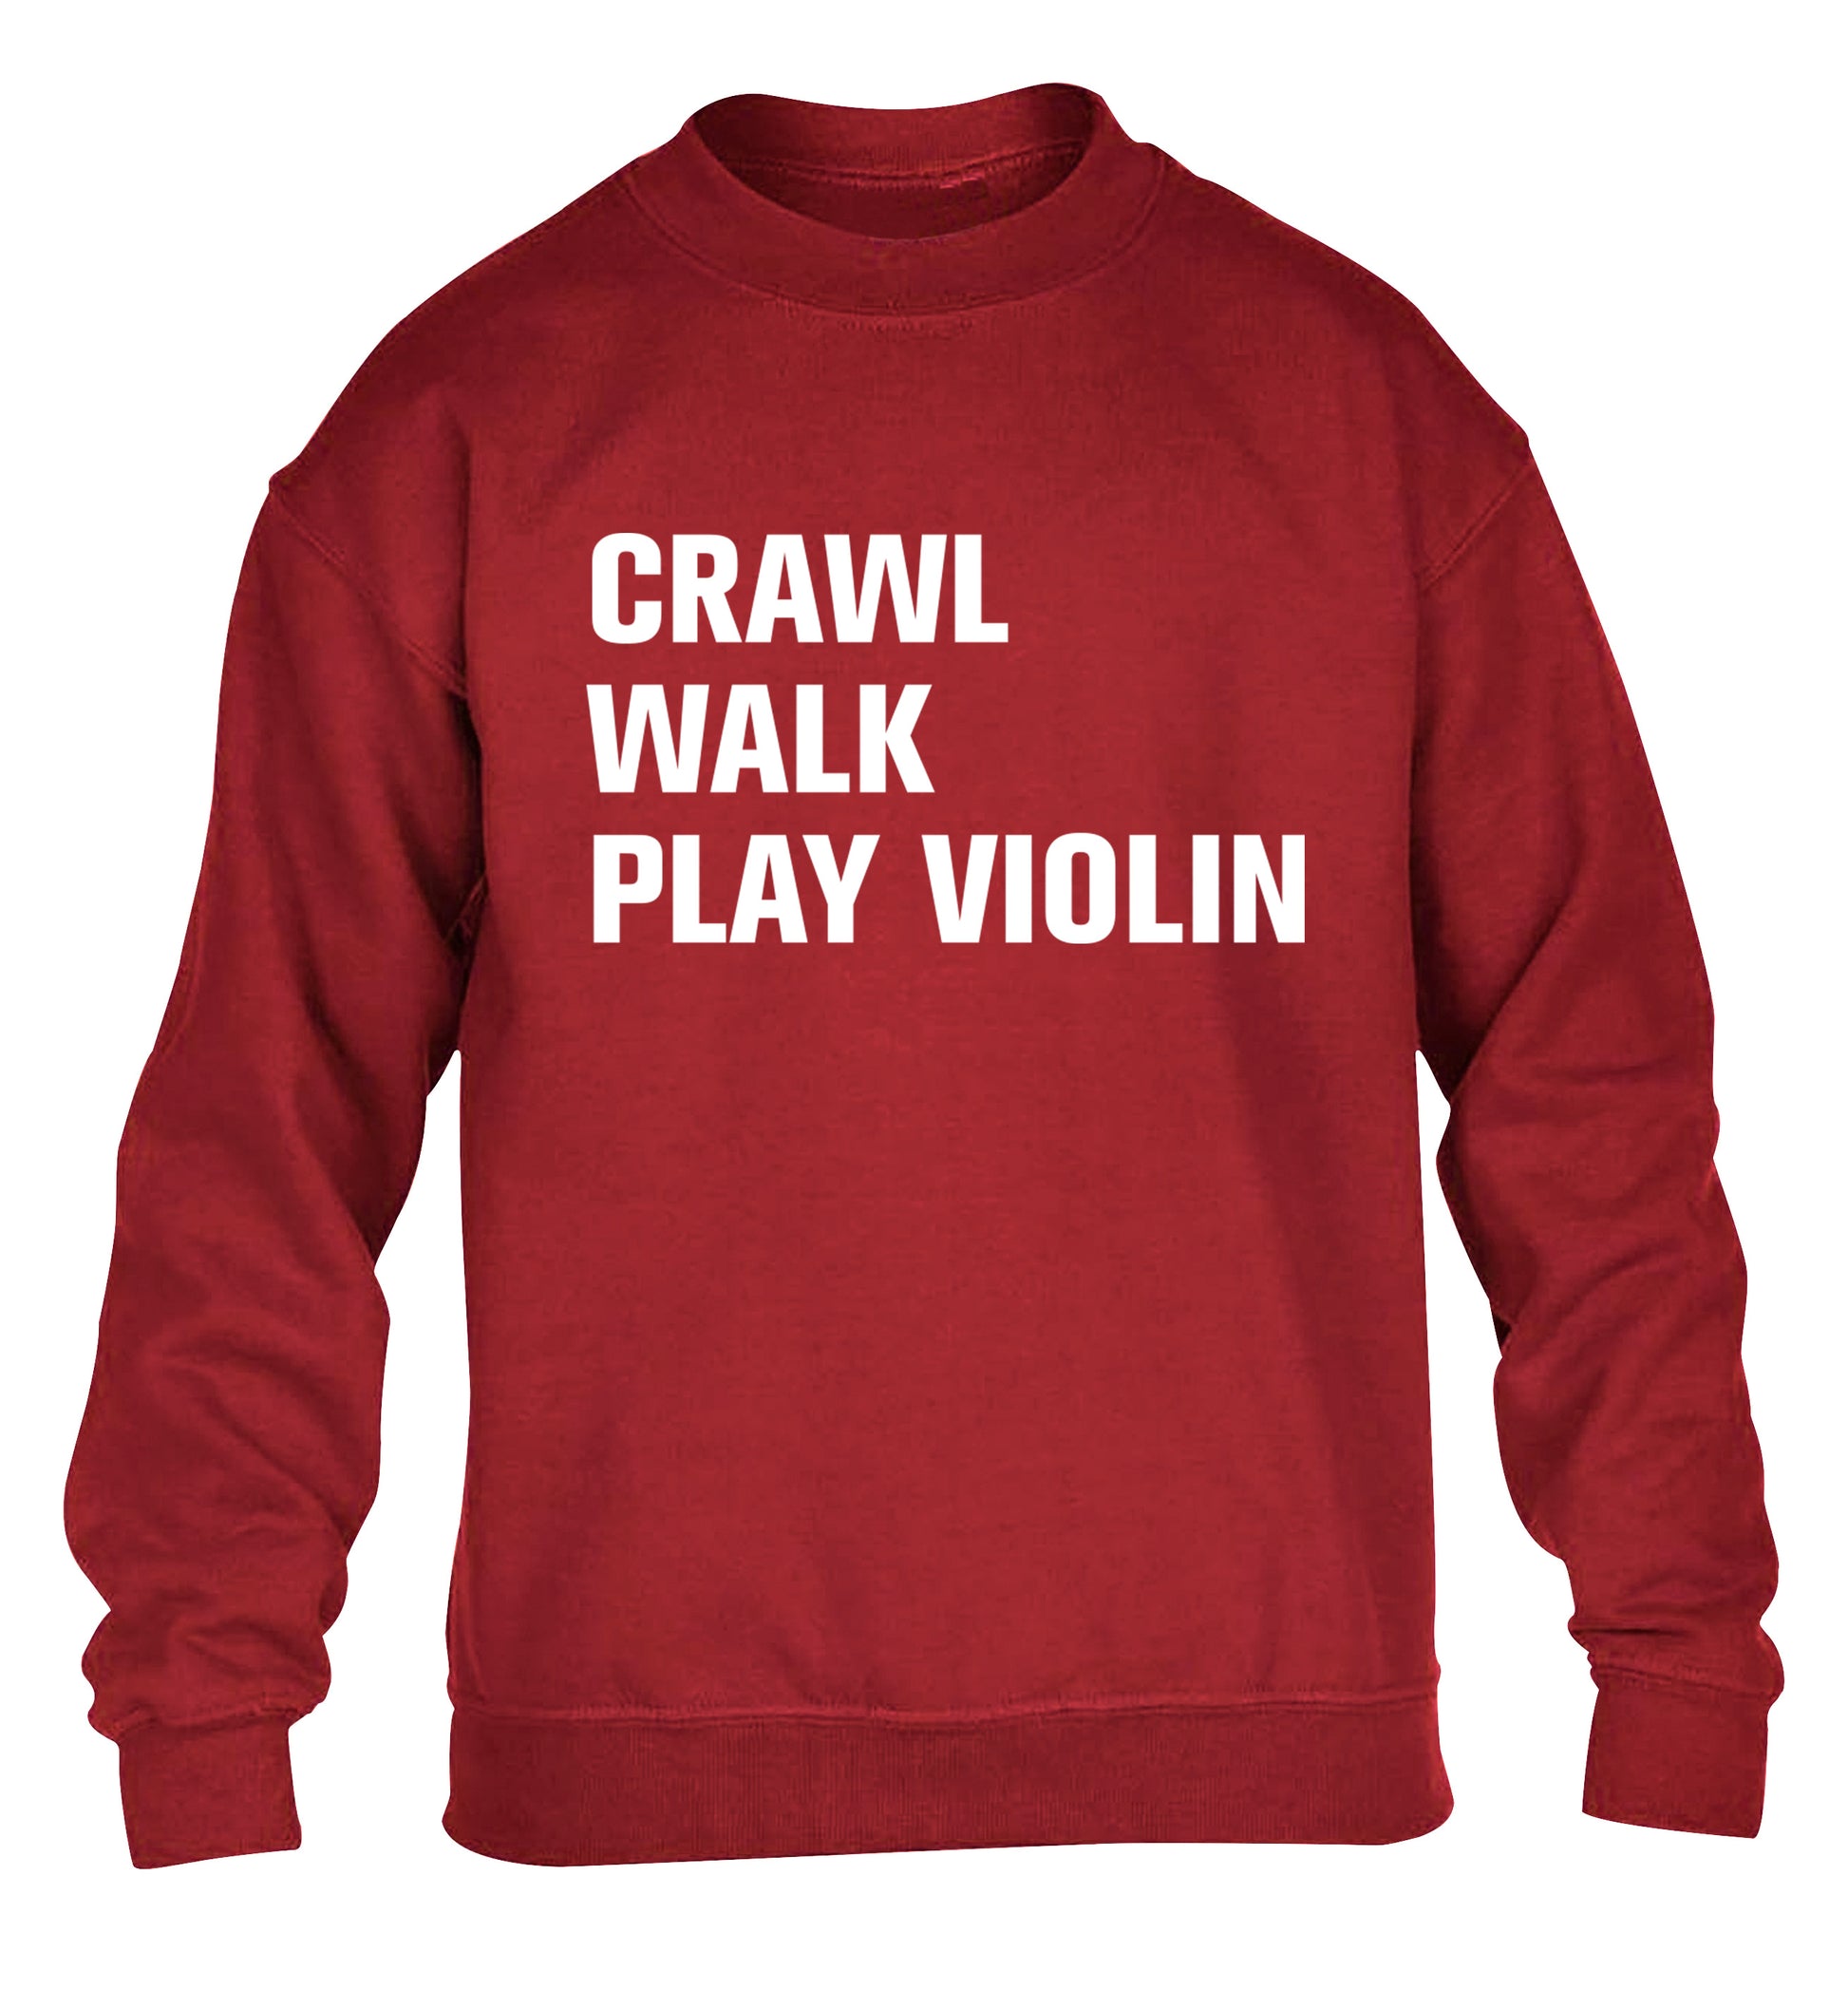 Crawl Walk Play Violin children's grey sweater 12-13 Years